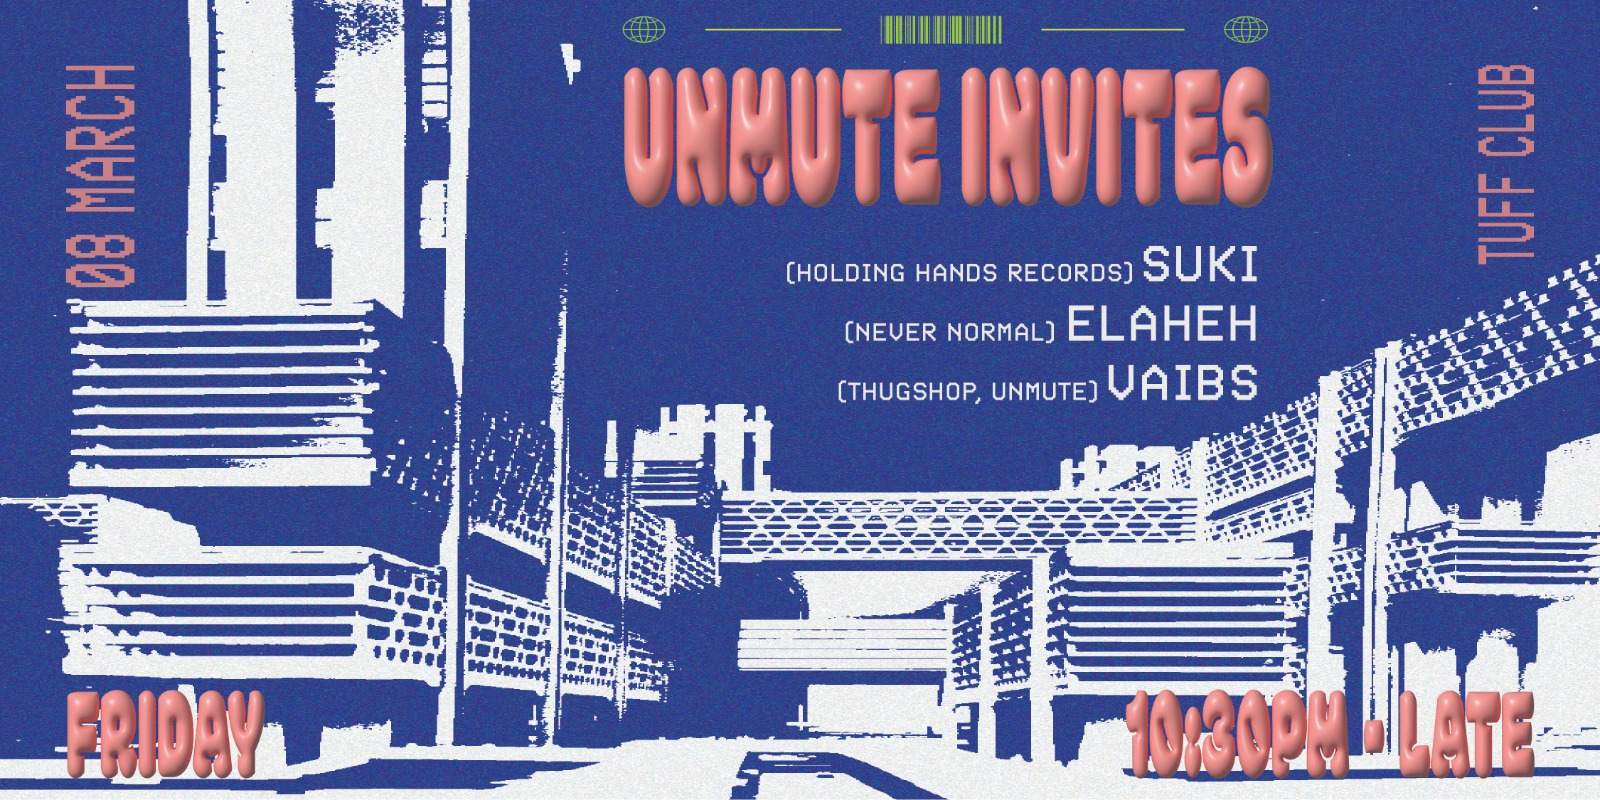 Unmute Invites: suki (AU) + Elaheh (TH) - フライヤー表